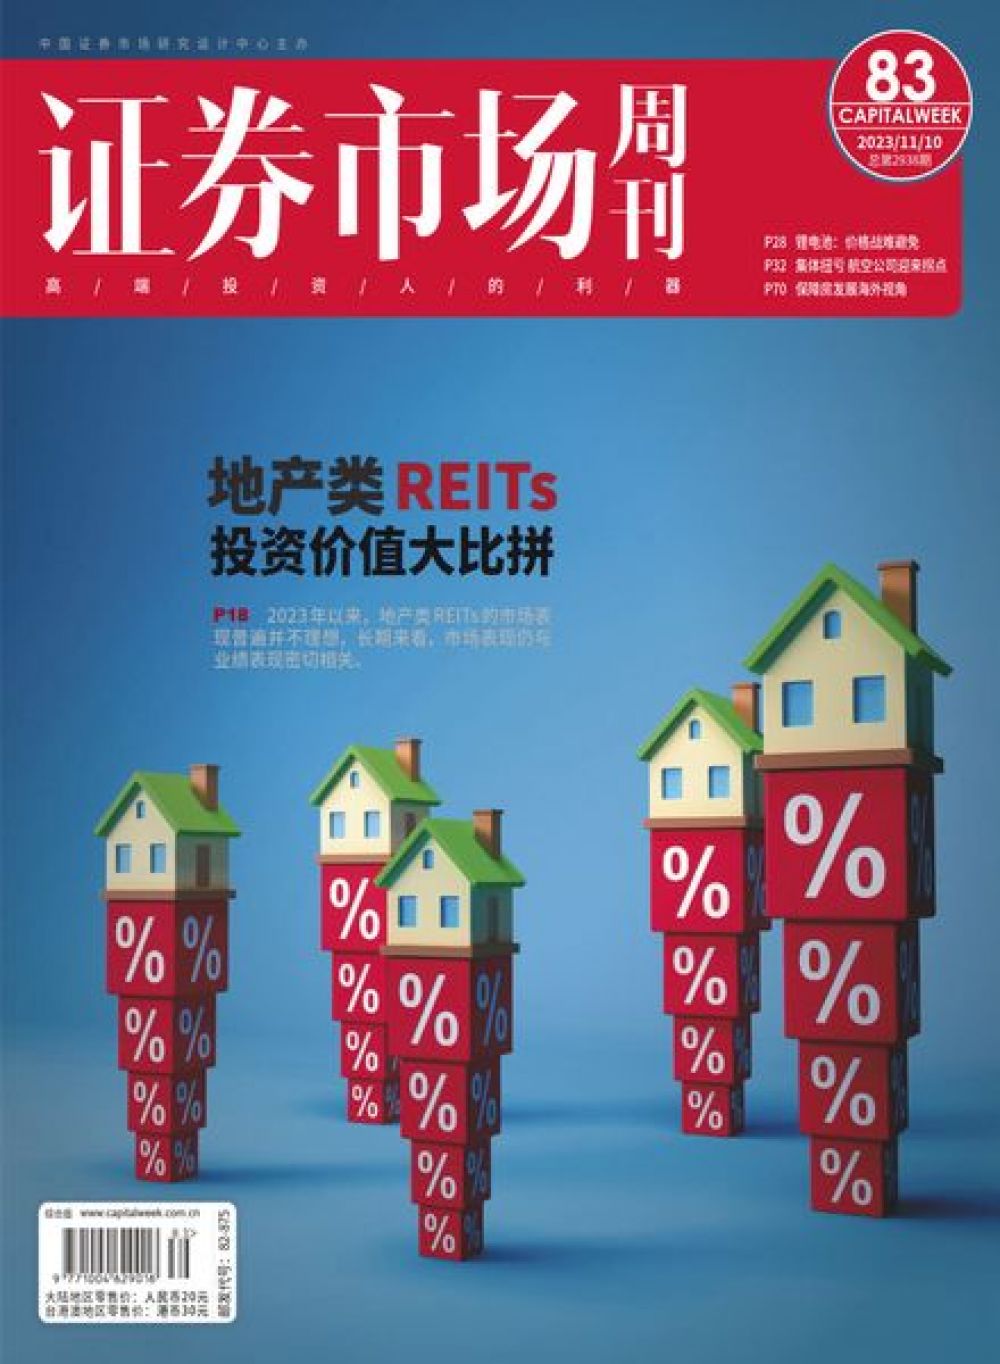 Извечный вопрос: в чем держать свои деньги, чтобы сохранить и приумножить  капитал? Китайский CAPITAL WEEK считает, что одним из надежных способов инвестиций еще несколько лет будет оставаться недвижимость, которая ежегодно растет в цене. 